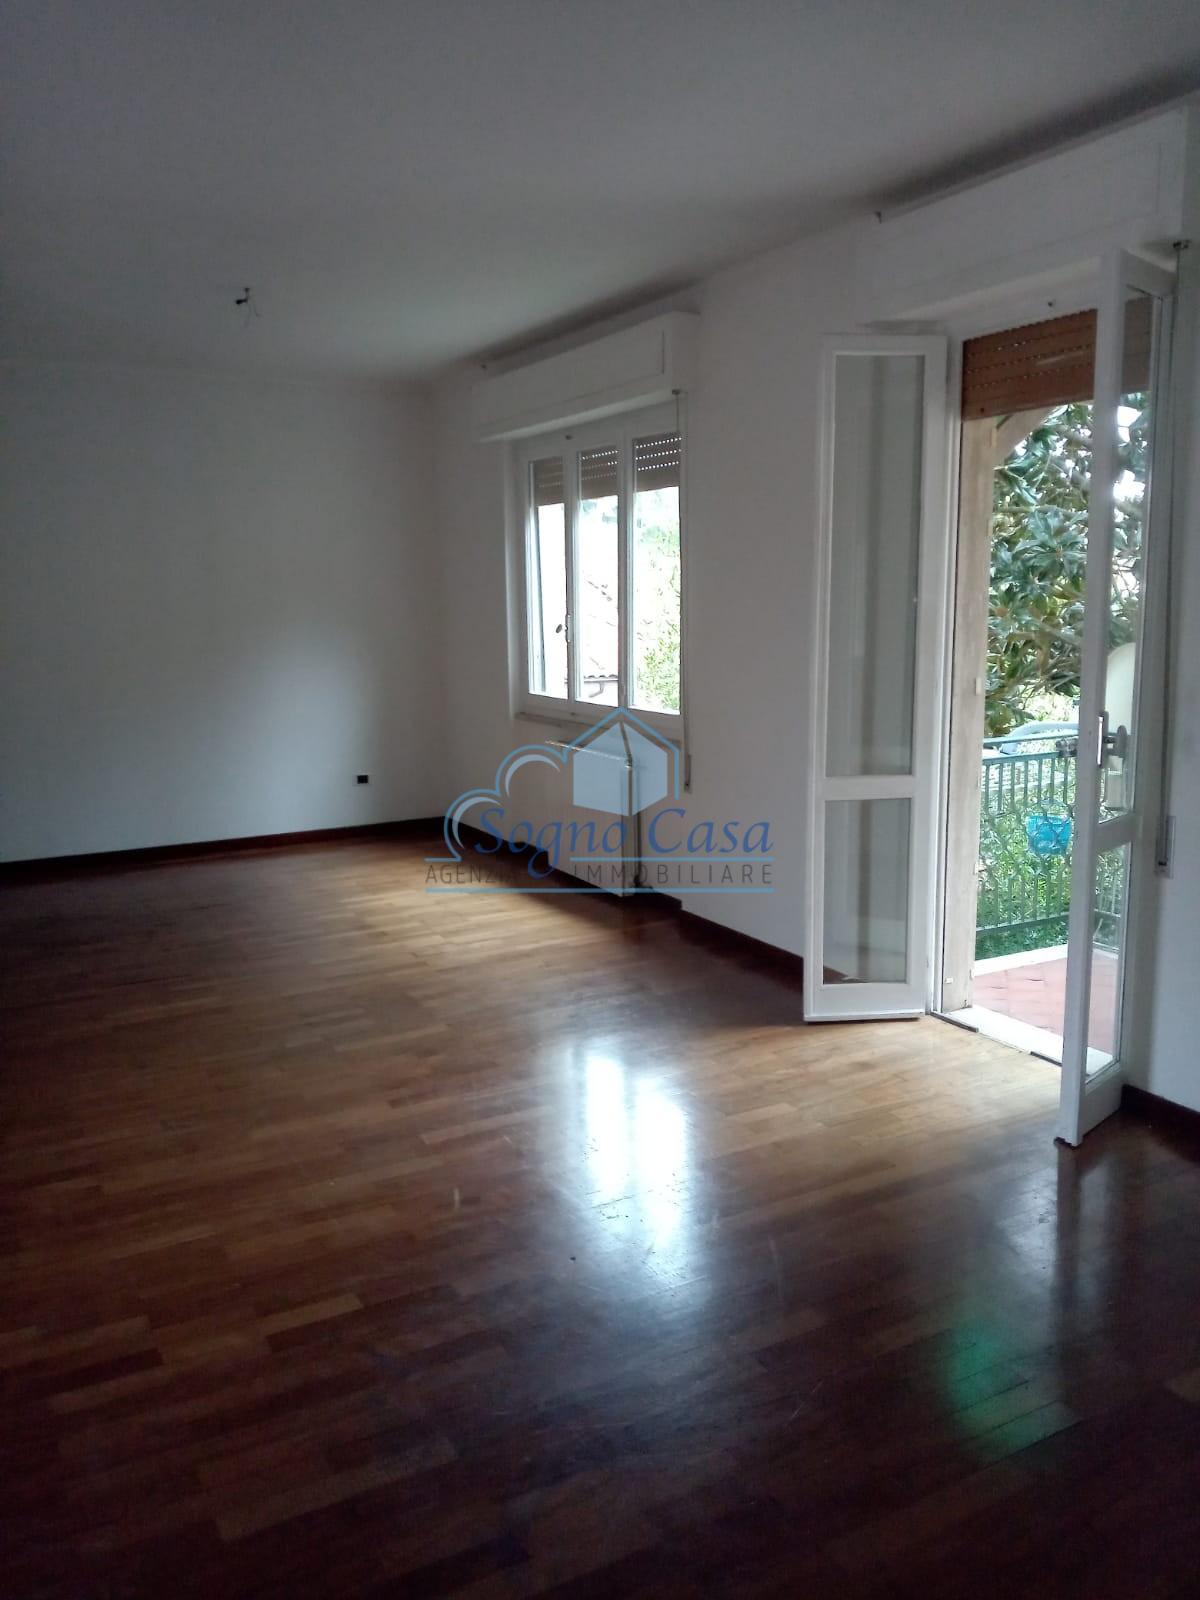 Appartamento in vendita a Castelnuovo Magra, 4 locali, prezzo € 160.000 | PortaleAgenzieImmobiliari.it